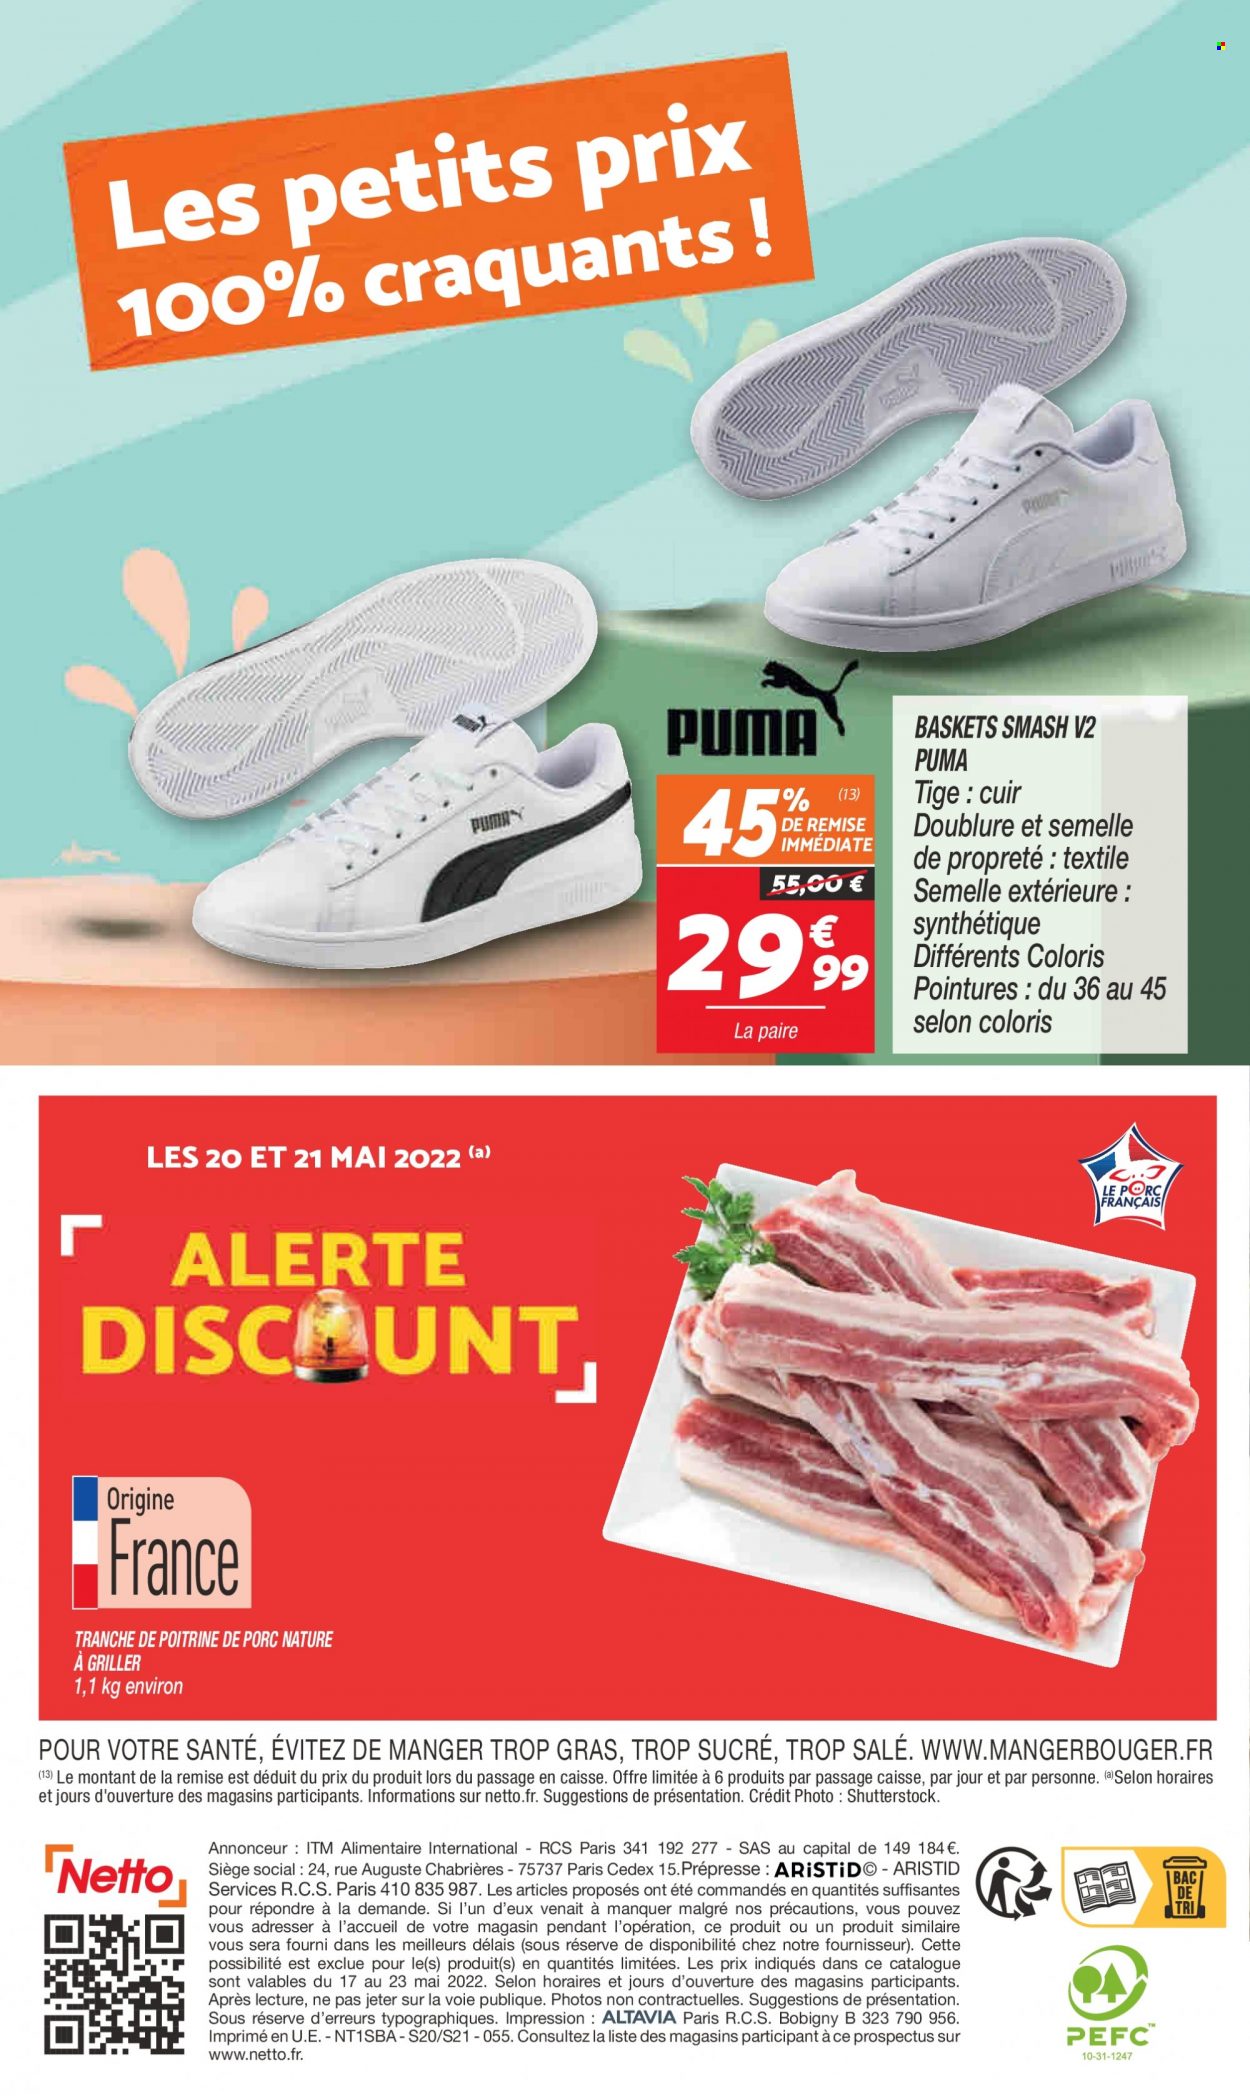 thumbnail - Catalogue Netto - 17/05/2022 - 23/05/2022 - Produits soldés - poitrine de porc, viande de porc, Puma, basket. Page 14.